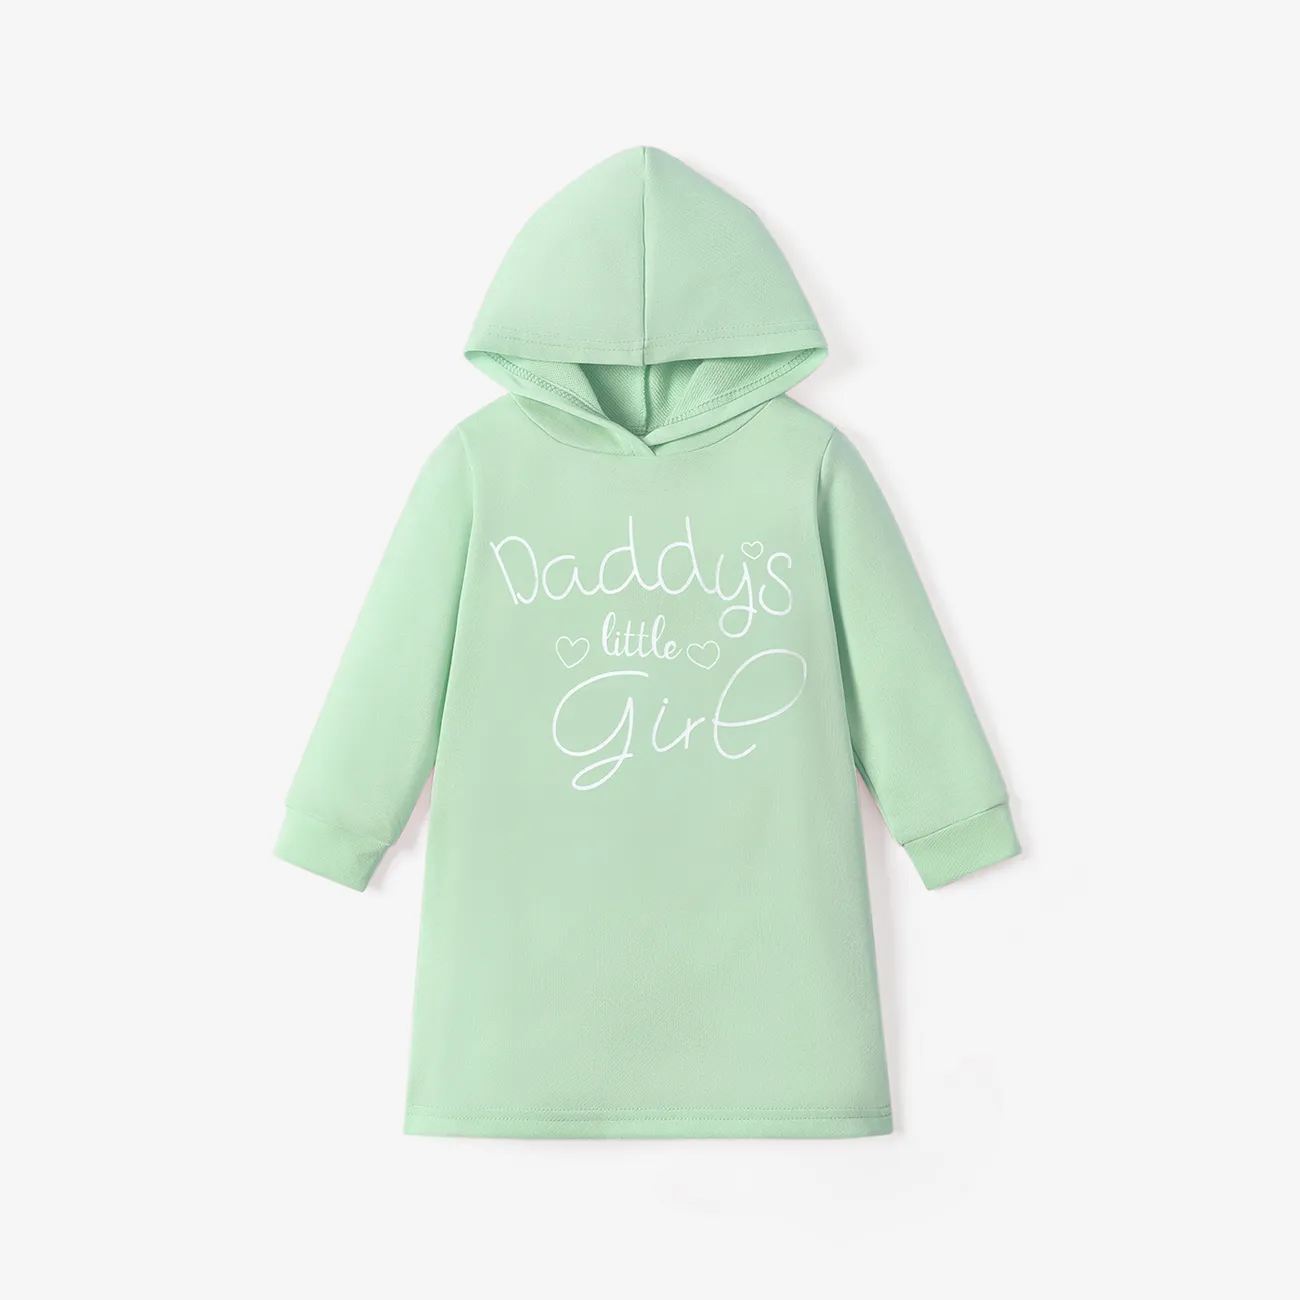 Toddler Girl Letter Print Solid Color Hooded Sweatshirt Dress Light Green big image 1